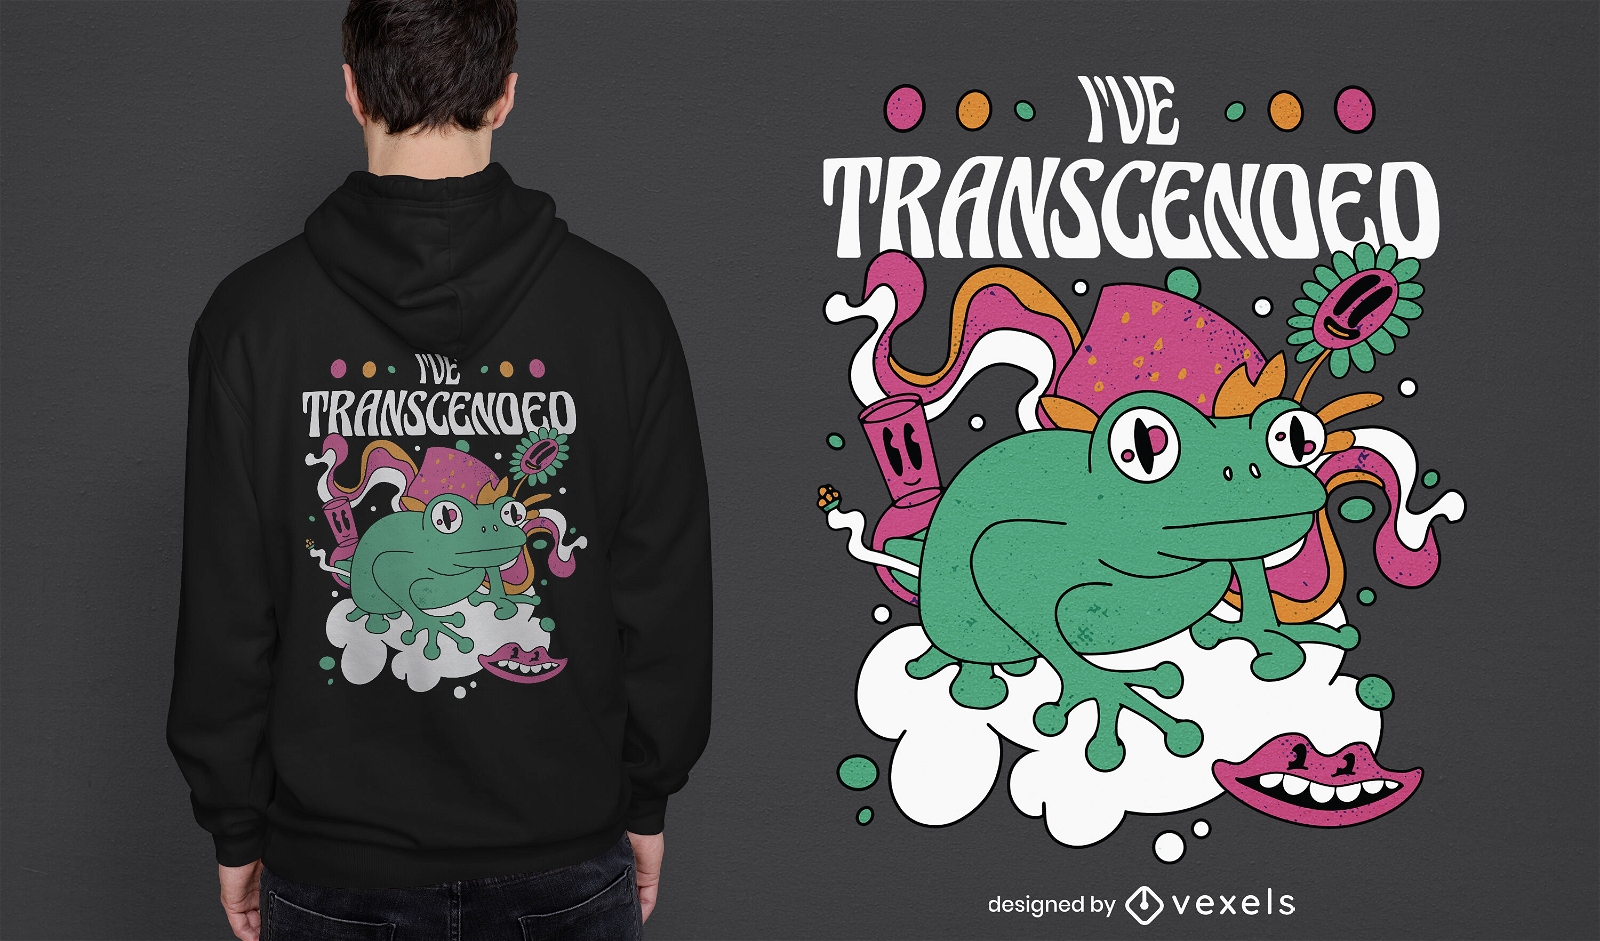 Trippy transcended frog t-shirt design